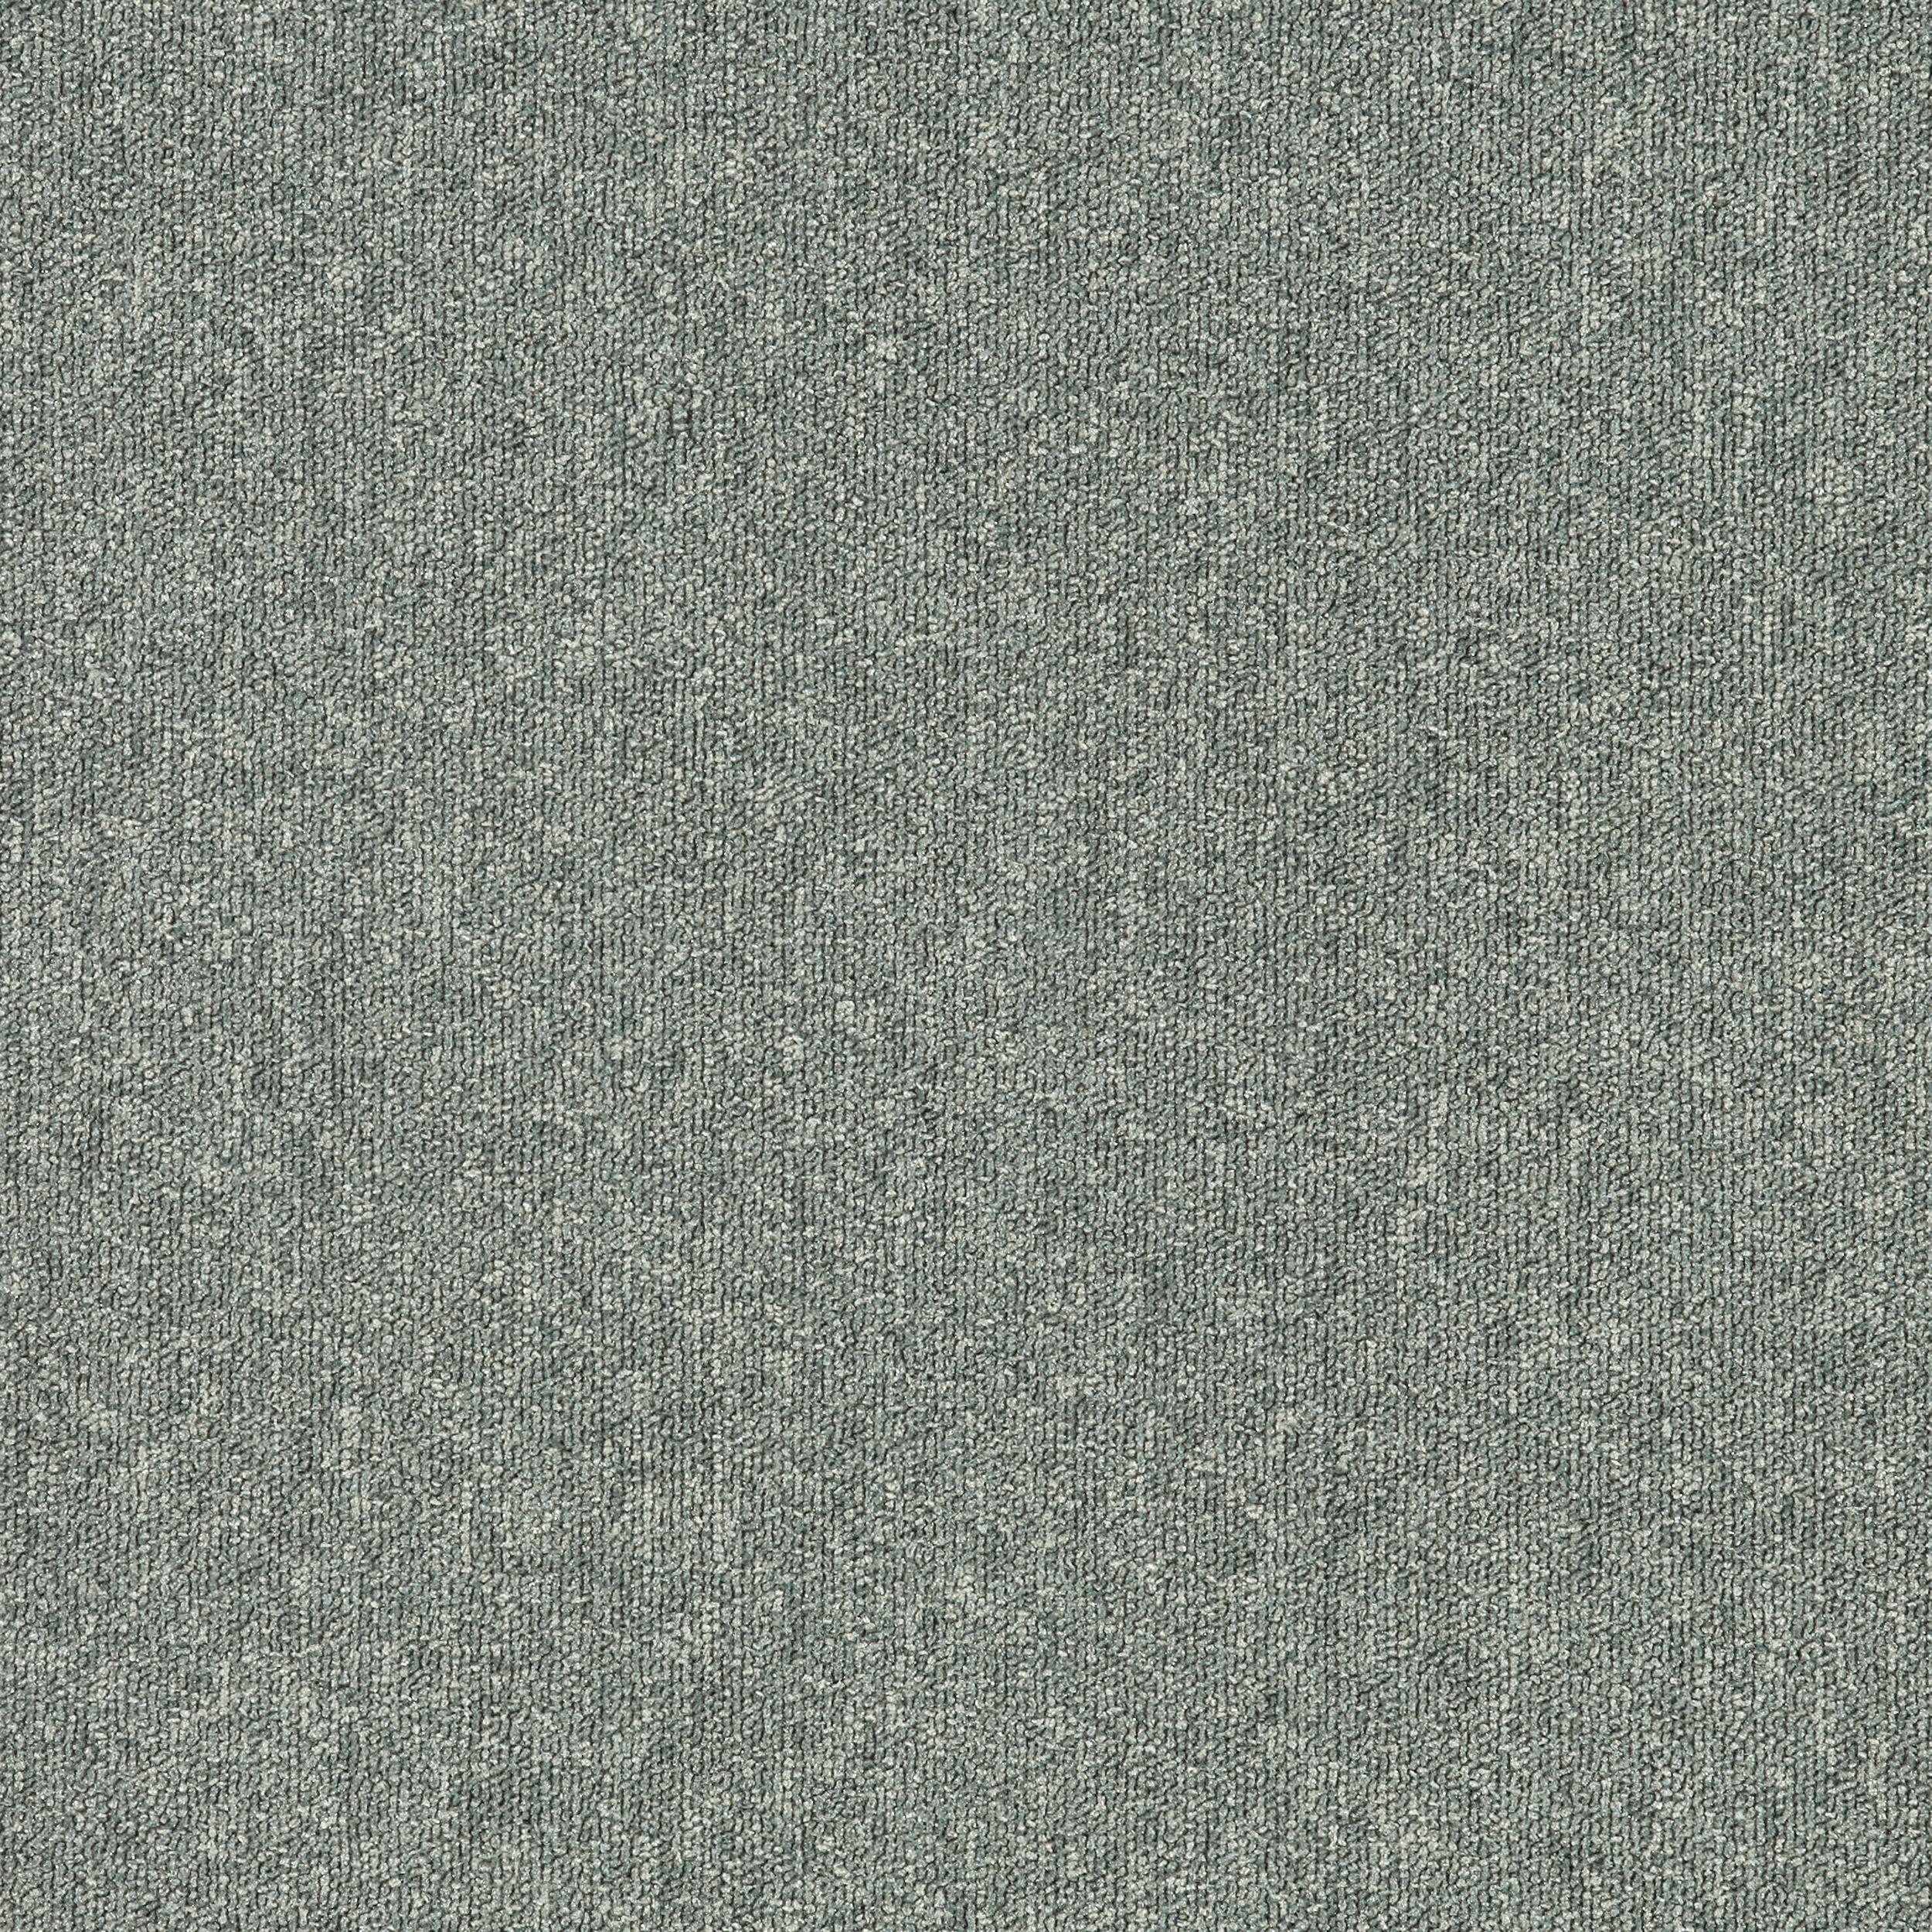 Heuga 580 II carpet tile in Oyster image number 2